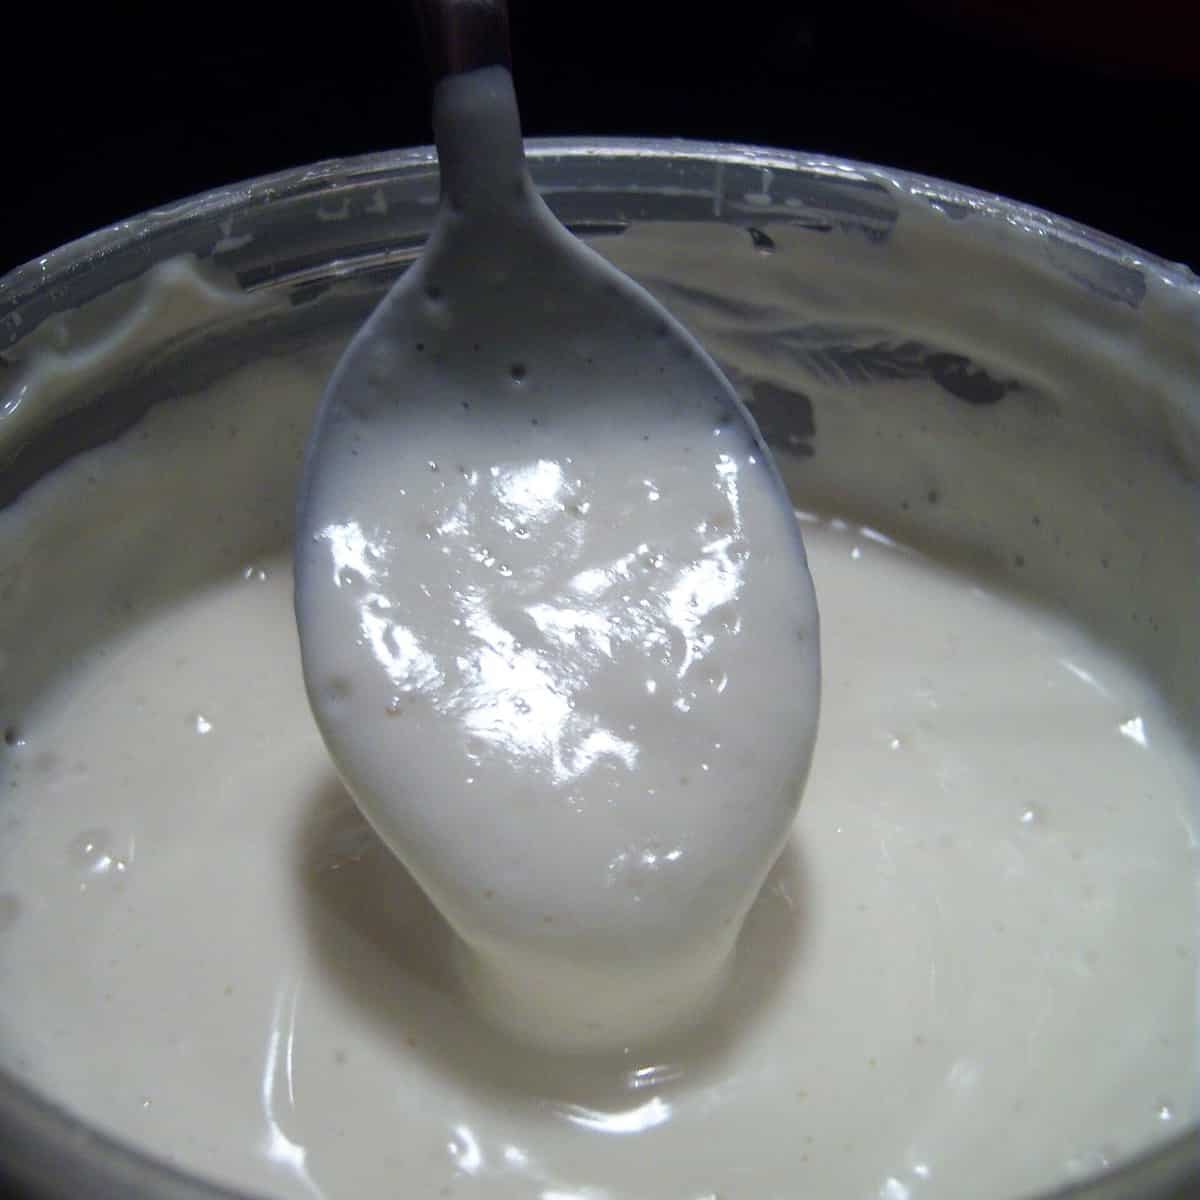 Vegan Sour Cream